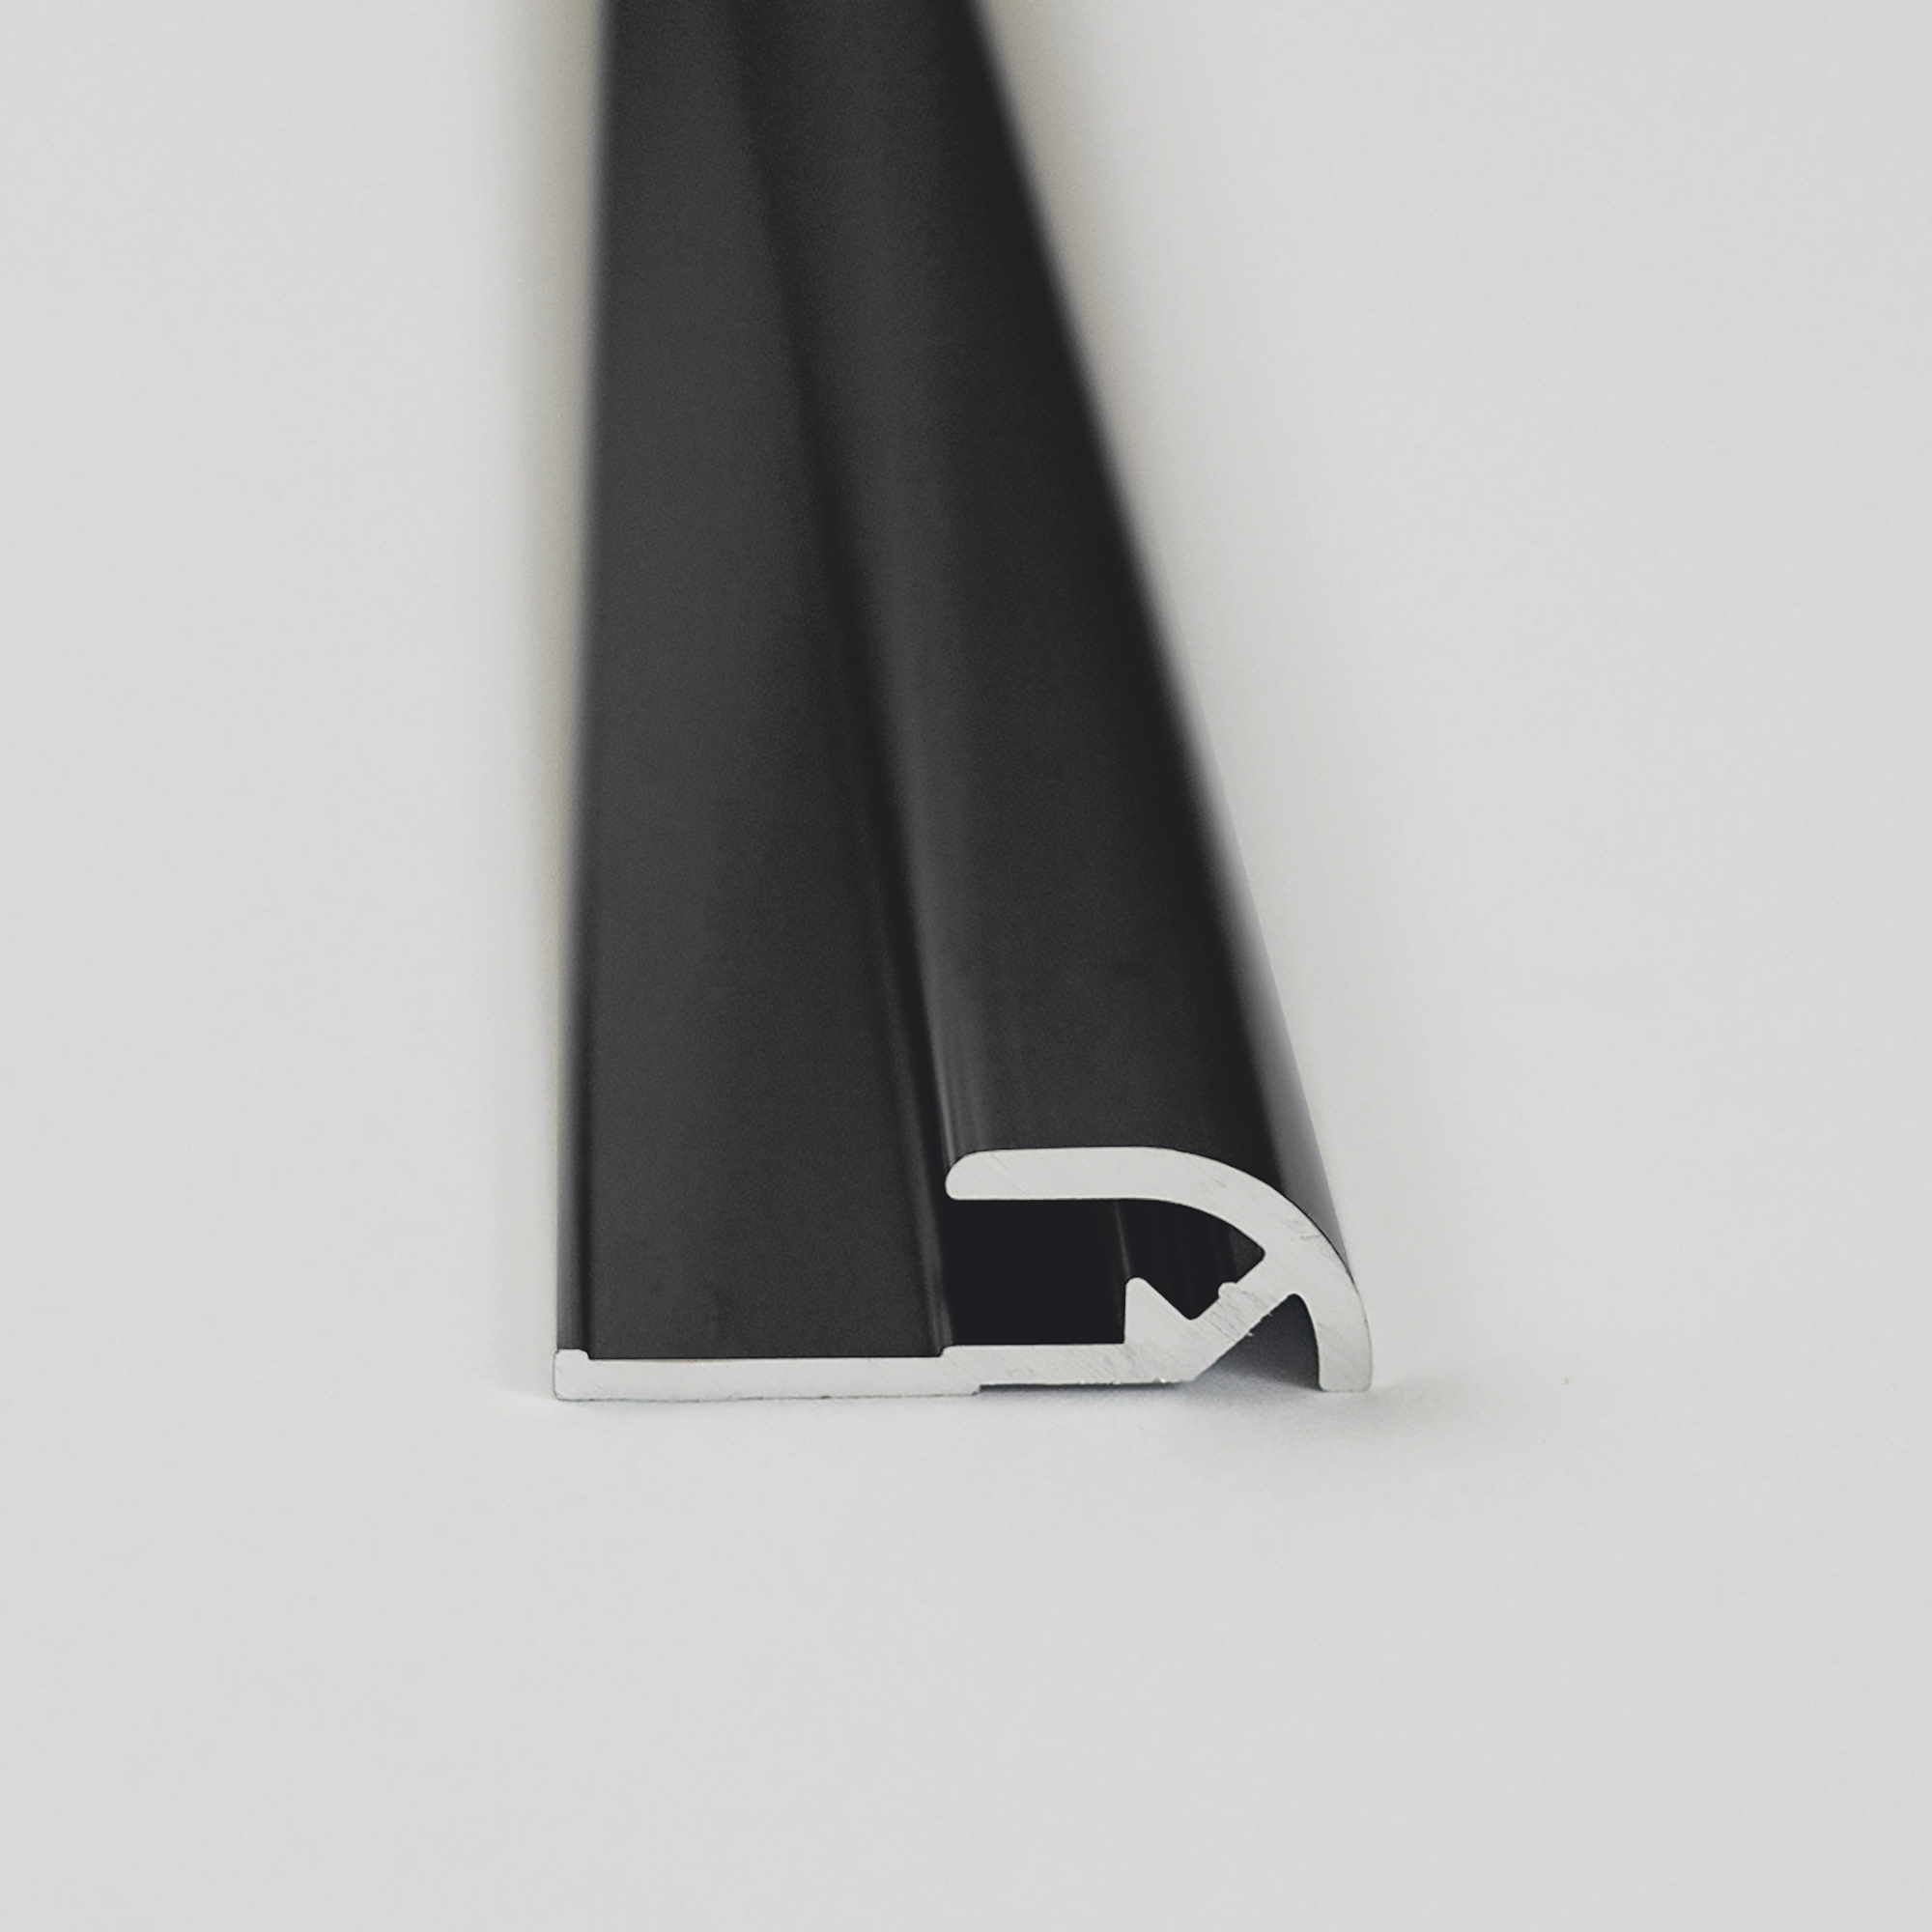 Abschlussprofil für Rückwandplatten, rund, schwarz matt, 2100 mm + product picture